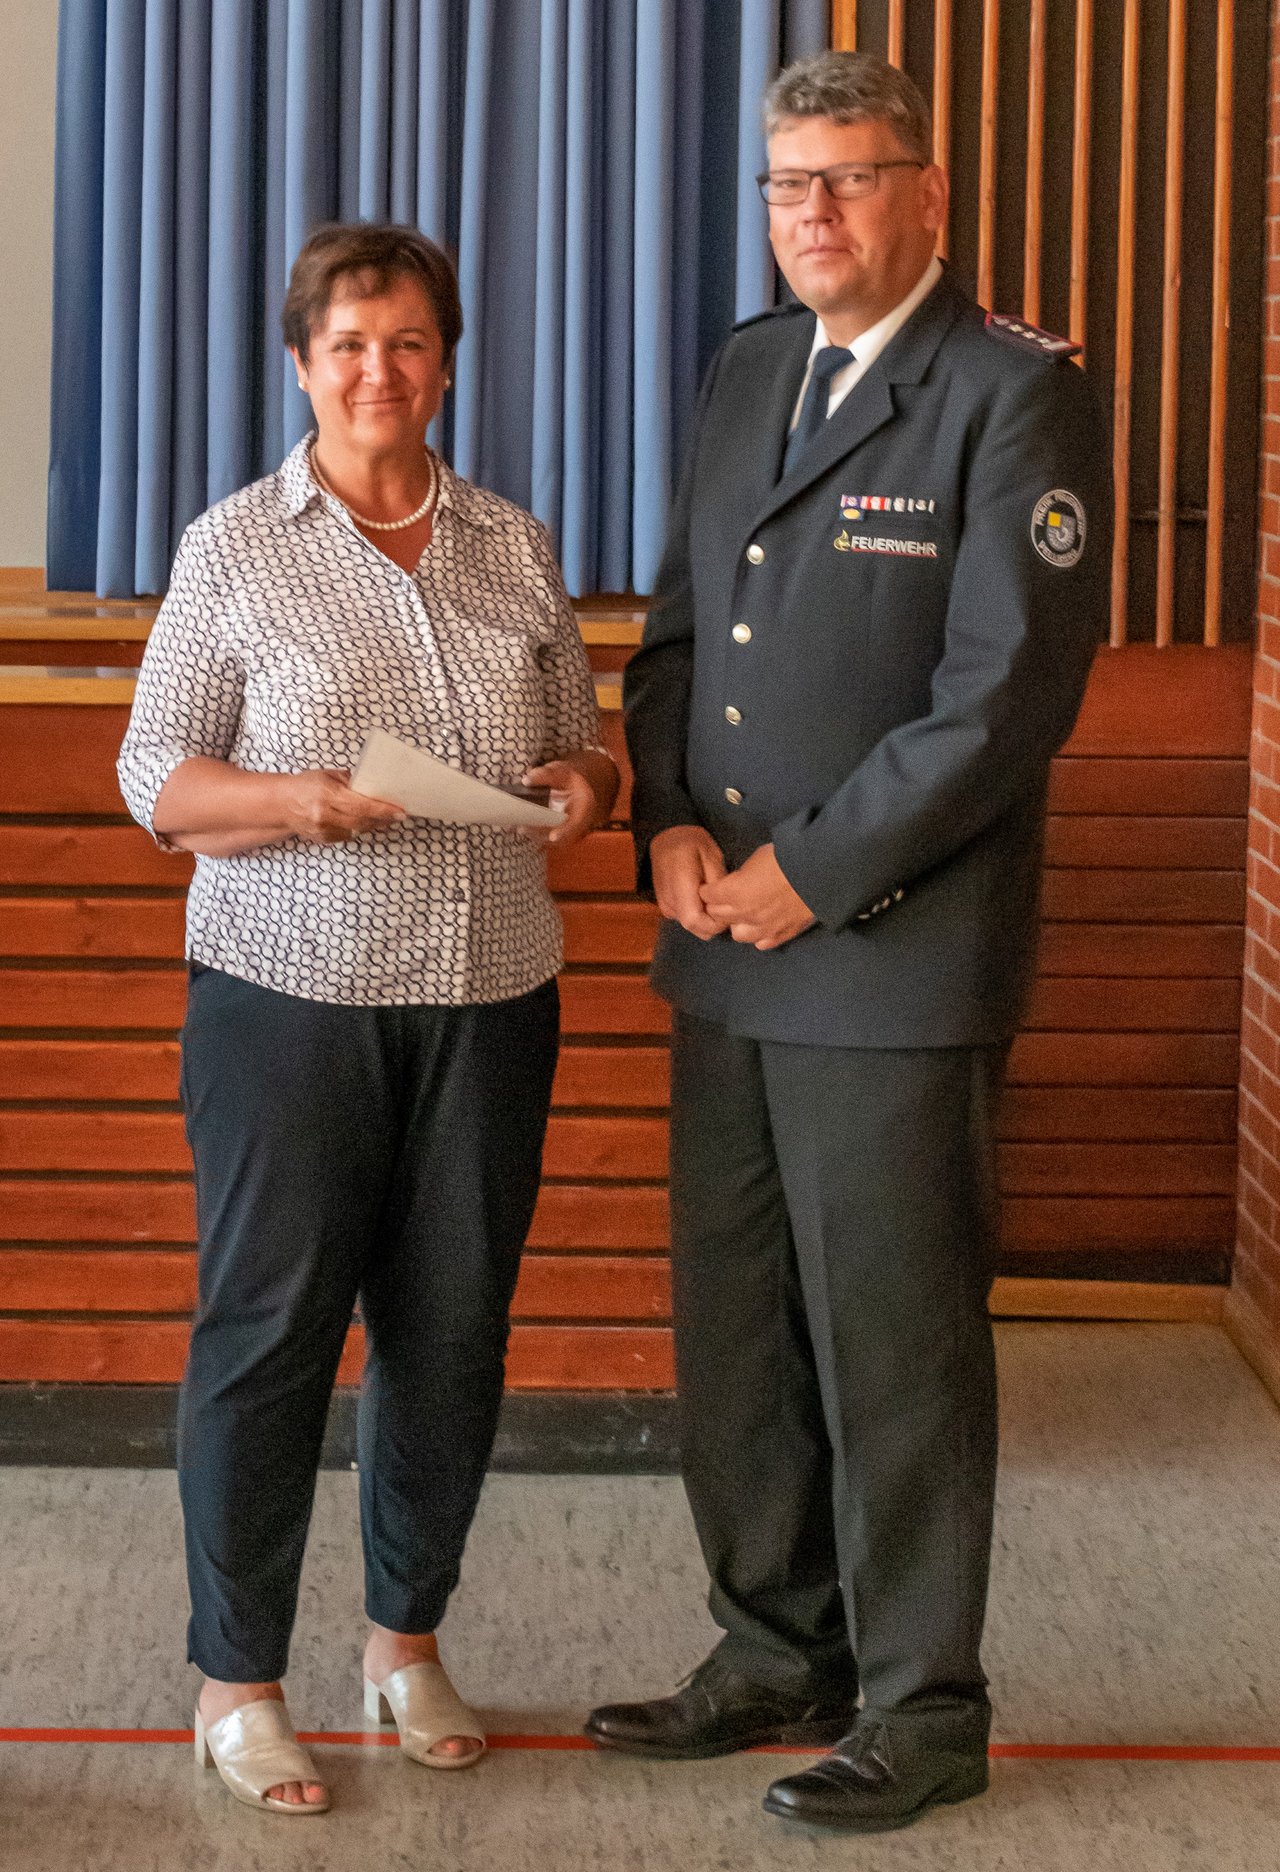 Für seine hervorragenden Dienste für die Freiwillige Feuerwehr Vellberg erhielt Kommandant a.D. Jens Marquardt die Auszeichnung zum Ehrenkommandanten und die Ehrenmedaille der Stadt in Silber.